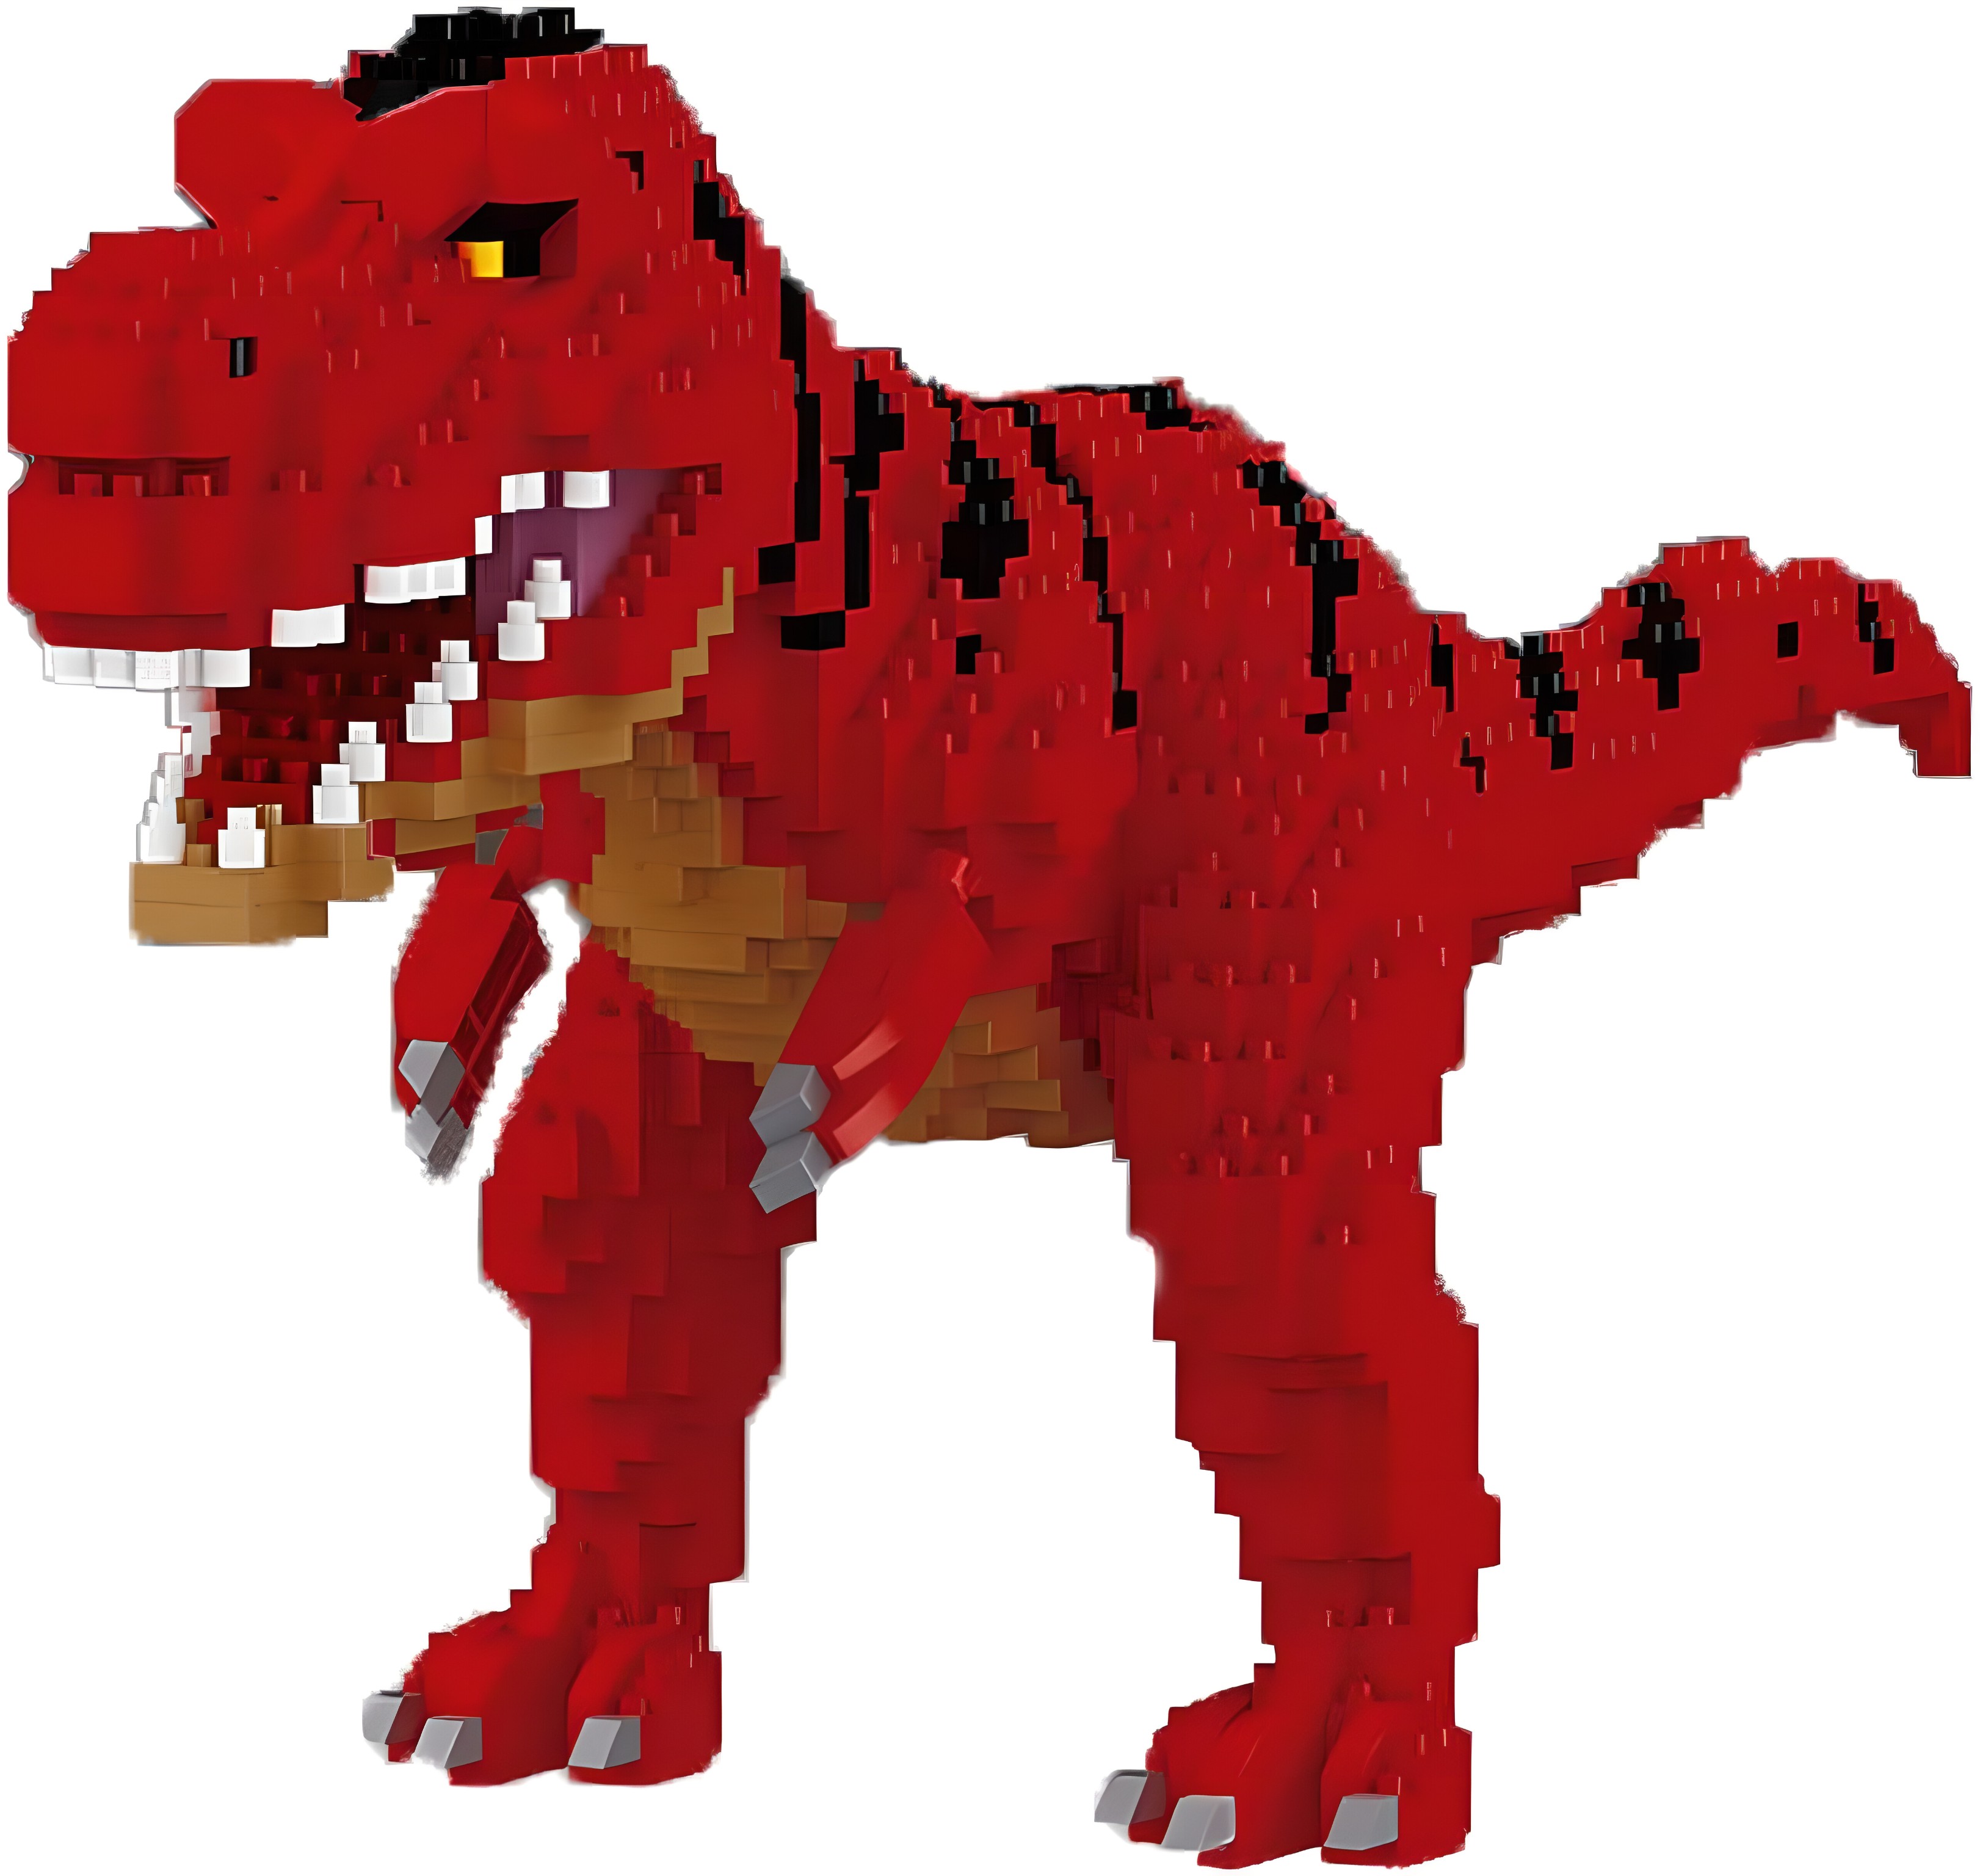 Конструктор 3D Balody «Динозавр» 16248 / 1548 деталей